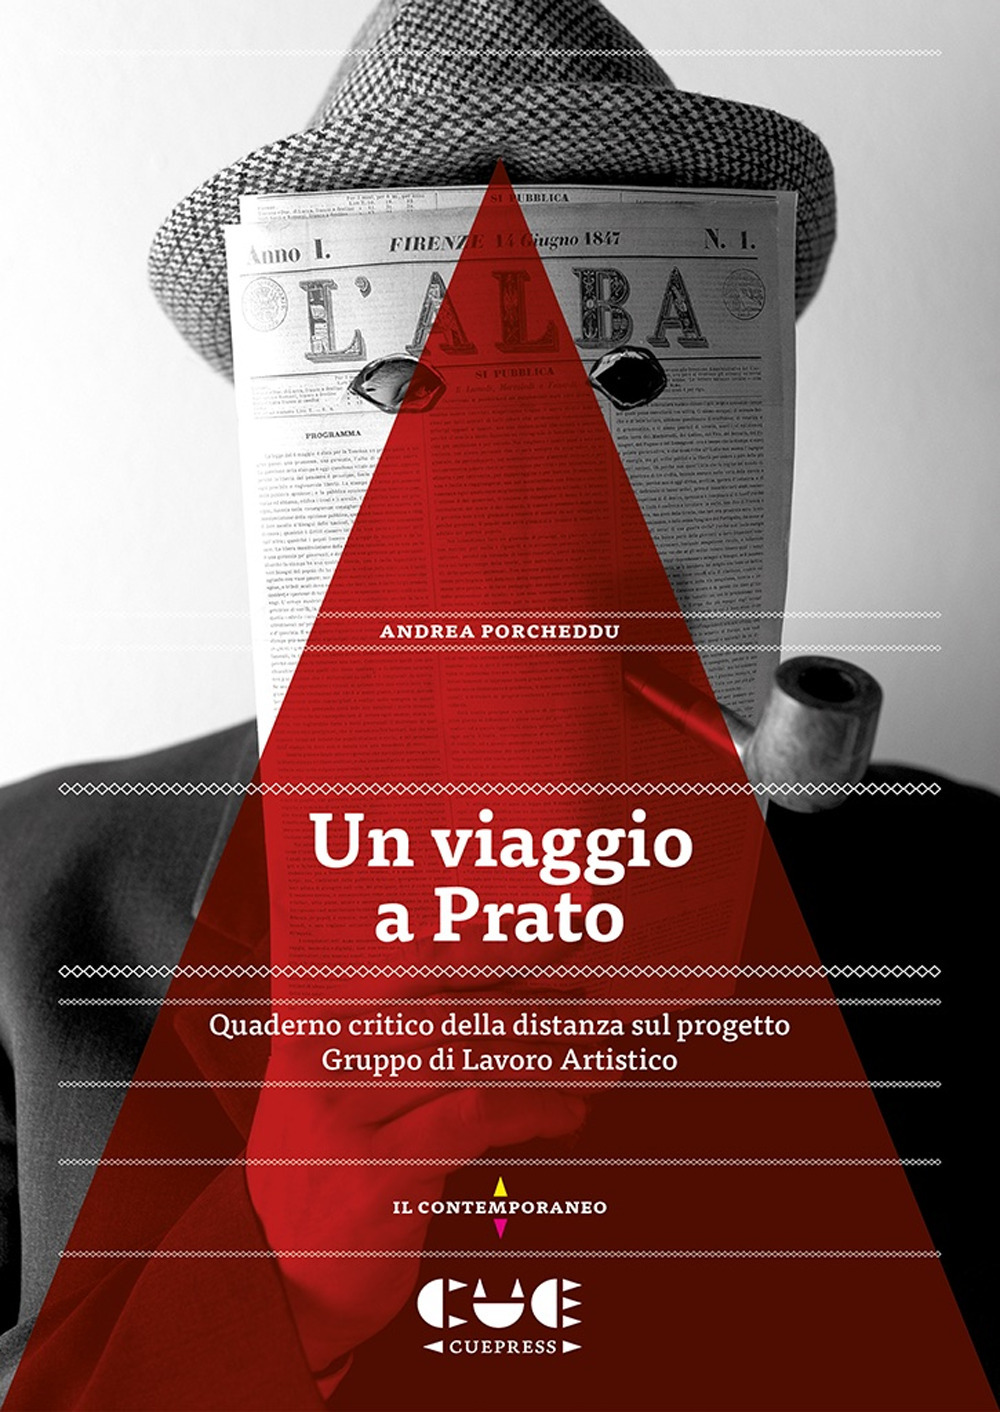 Un viaggio a Prato. Quaderno critico della distanza sul progetto Gruppo di Lavoro Artistico